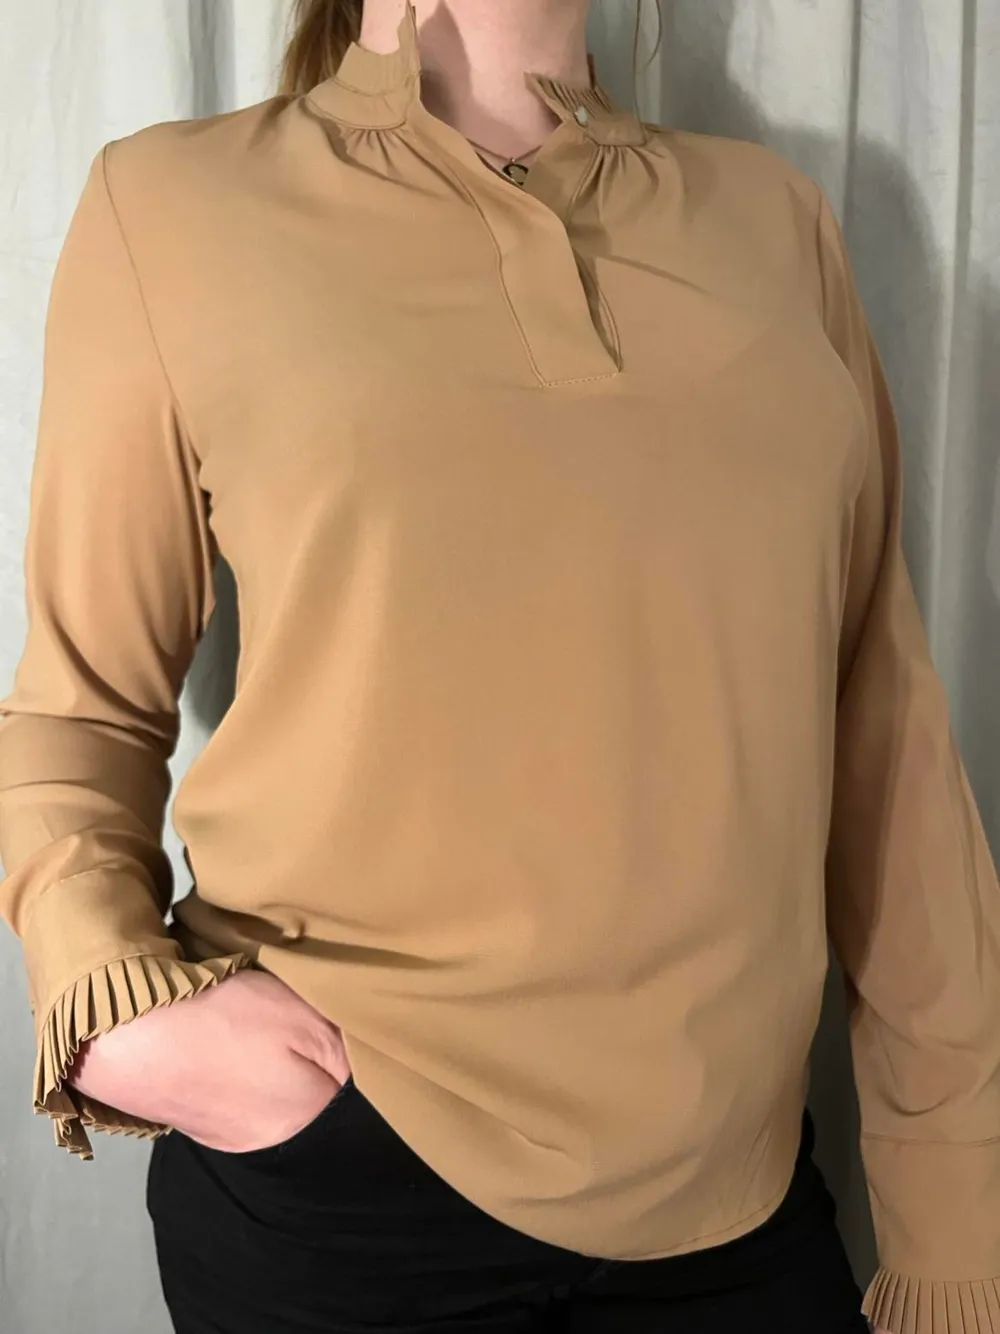 Damskjorta från Calvin Klein storlek M. Skjortor.